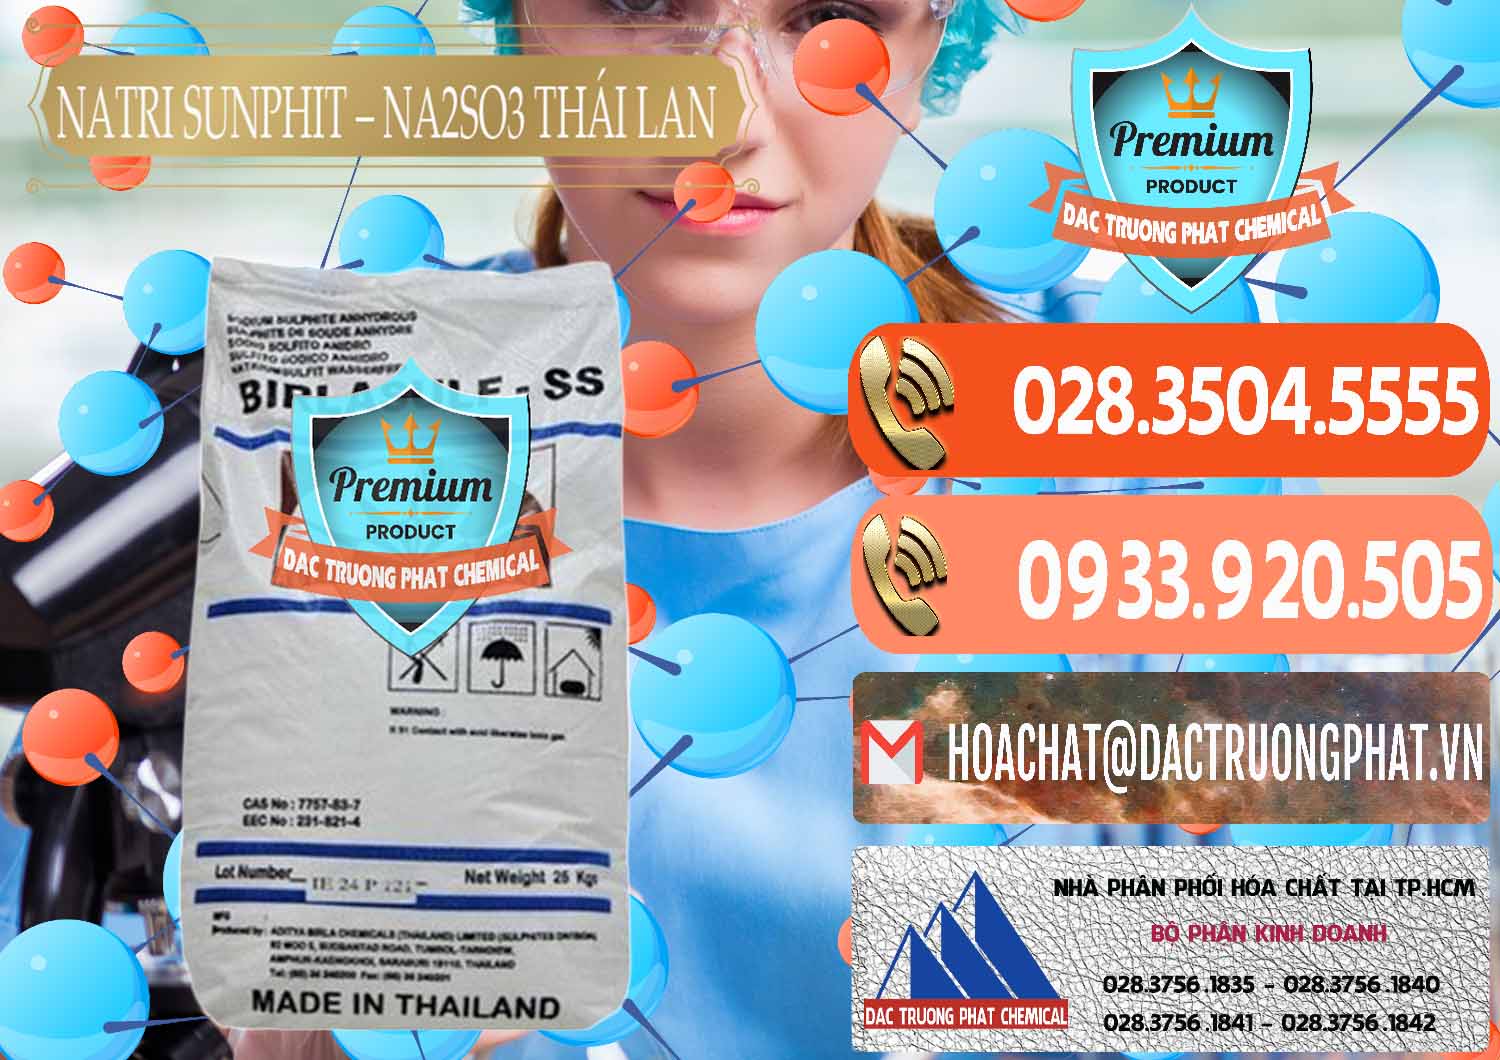 Công ty chuyên bán - cung cấp Natri Sunphit - NA2SO3 Thái Lan - 0105 - Công ty chuyên kinh doanh - phân phối hóa chất tại TP.HCM - hoachatmientay.com